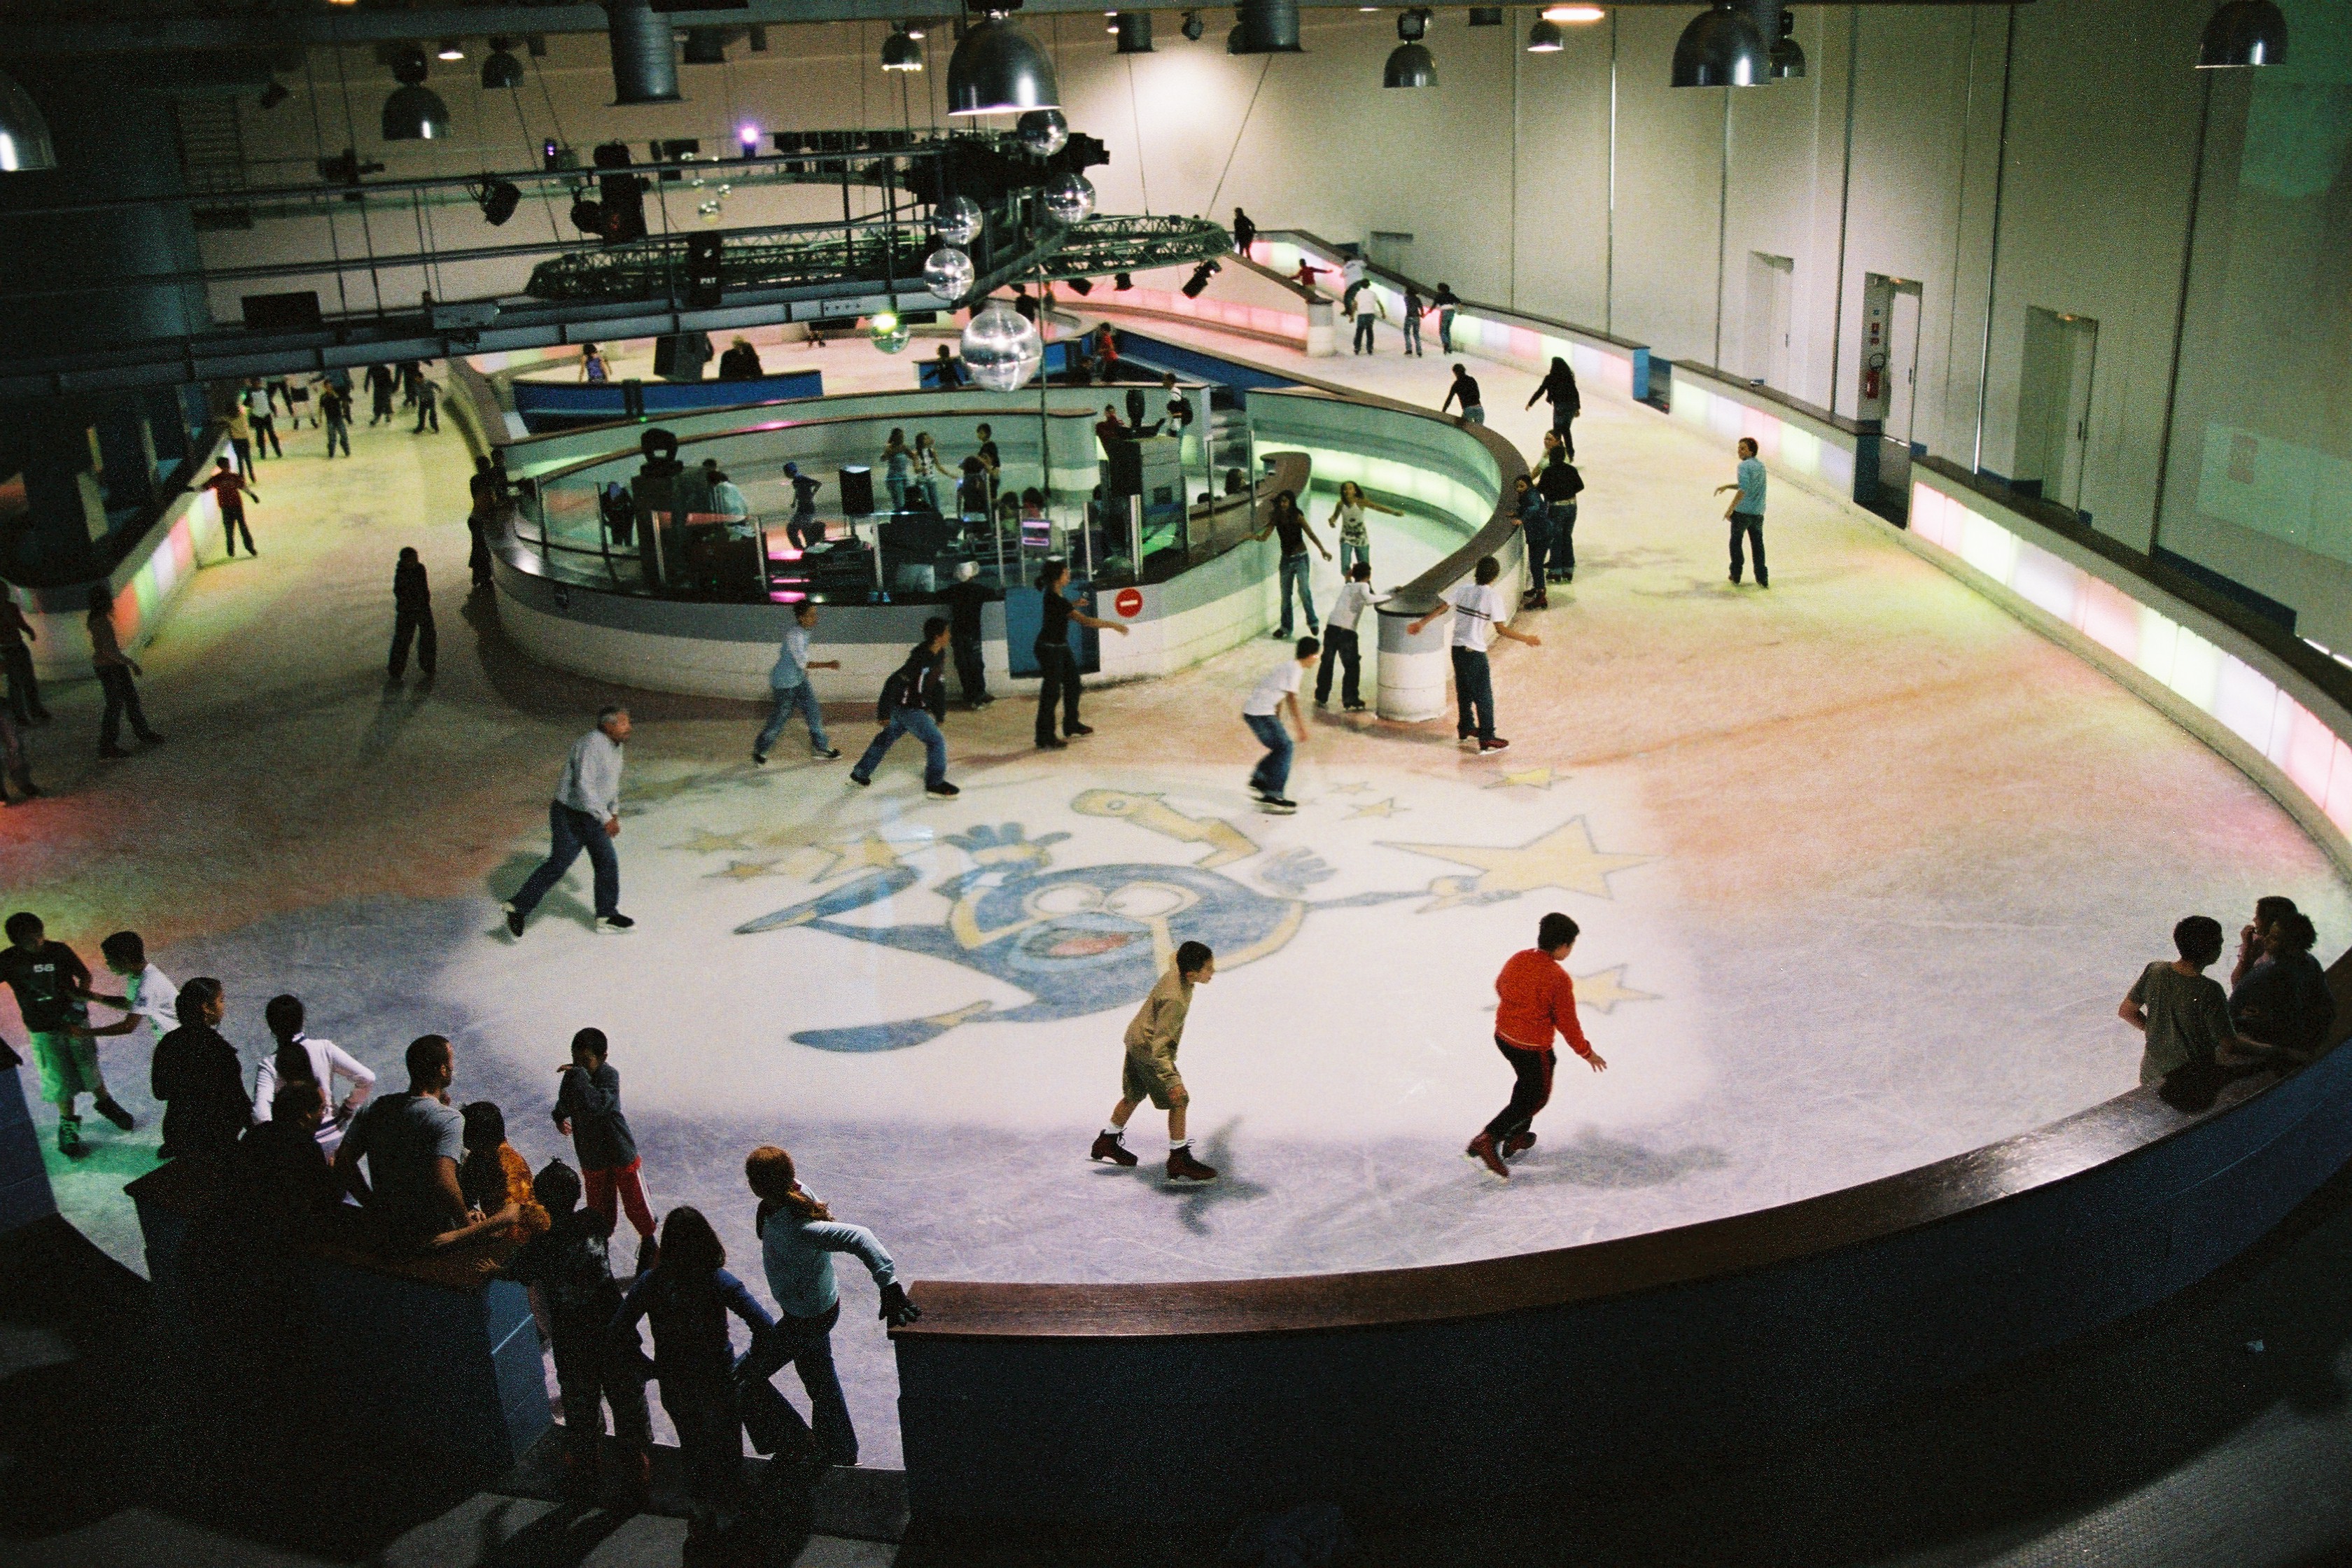 La patinoire Vegapolis est la première piste ludique de France, avec 1300 mètres carrés de glace